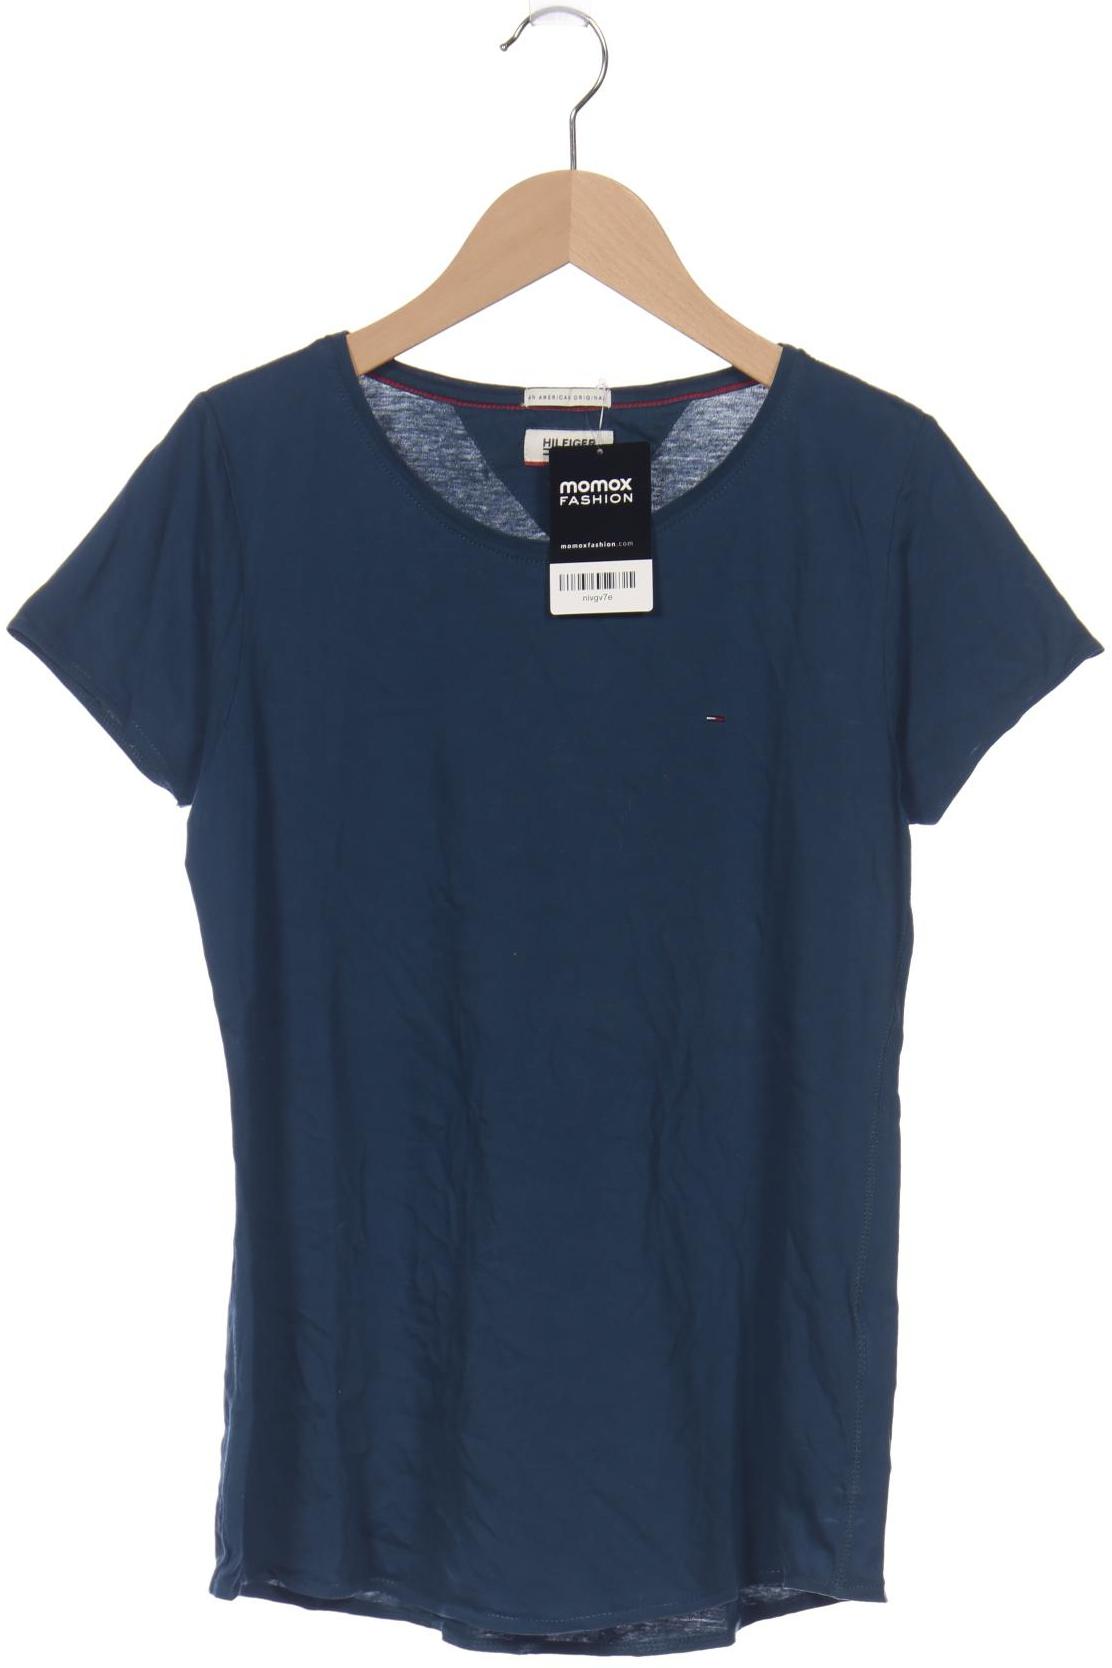 Hilfiger Denim Damen T-Shirt, marineblau, Gr. 36 von Hilfiger Denim